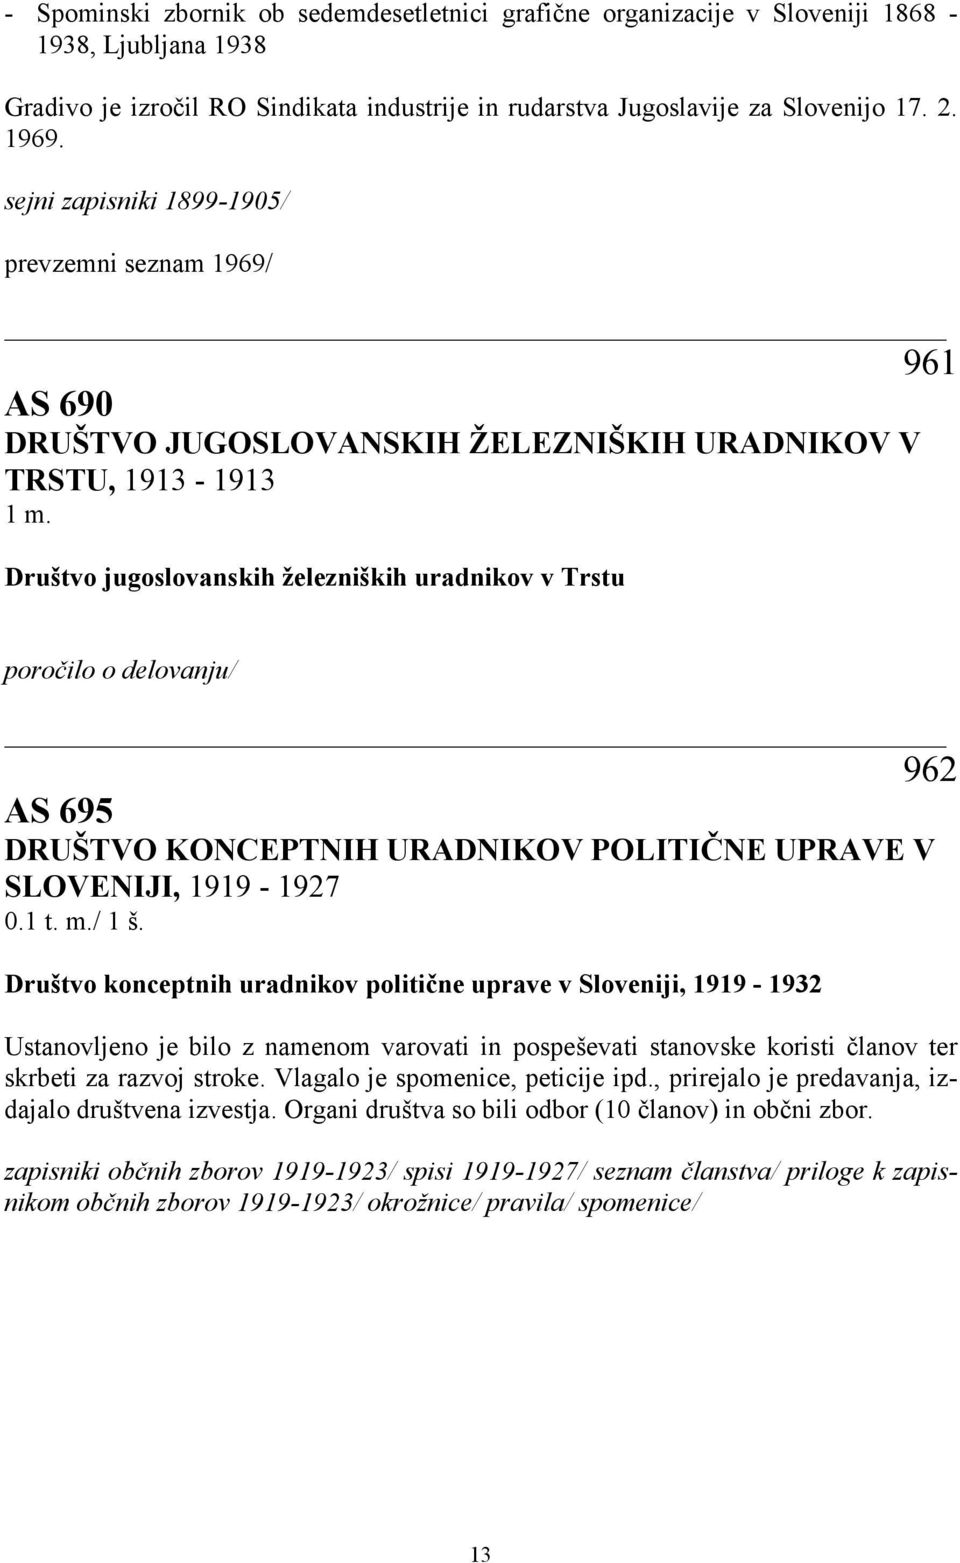 Društvo jugoslovanskih železniških uradnikov v Trstu poročilo o delovanju/ 962 AS 695 DRUŠTVO KONCEPTNIH URADNIKOV POLITIČNE UPRAVE V SLOVENIJI, 1919-1927 0.1 t. m./ 1 š.